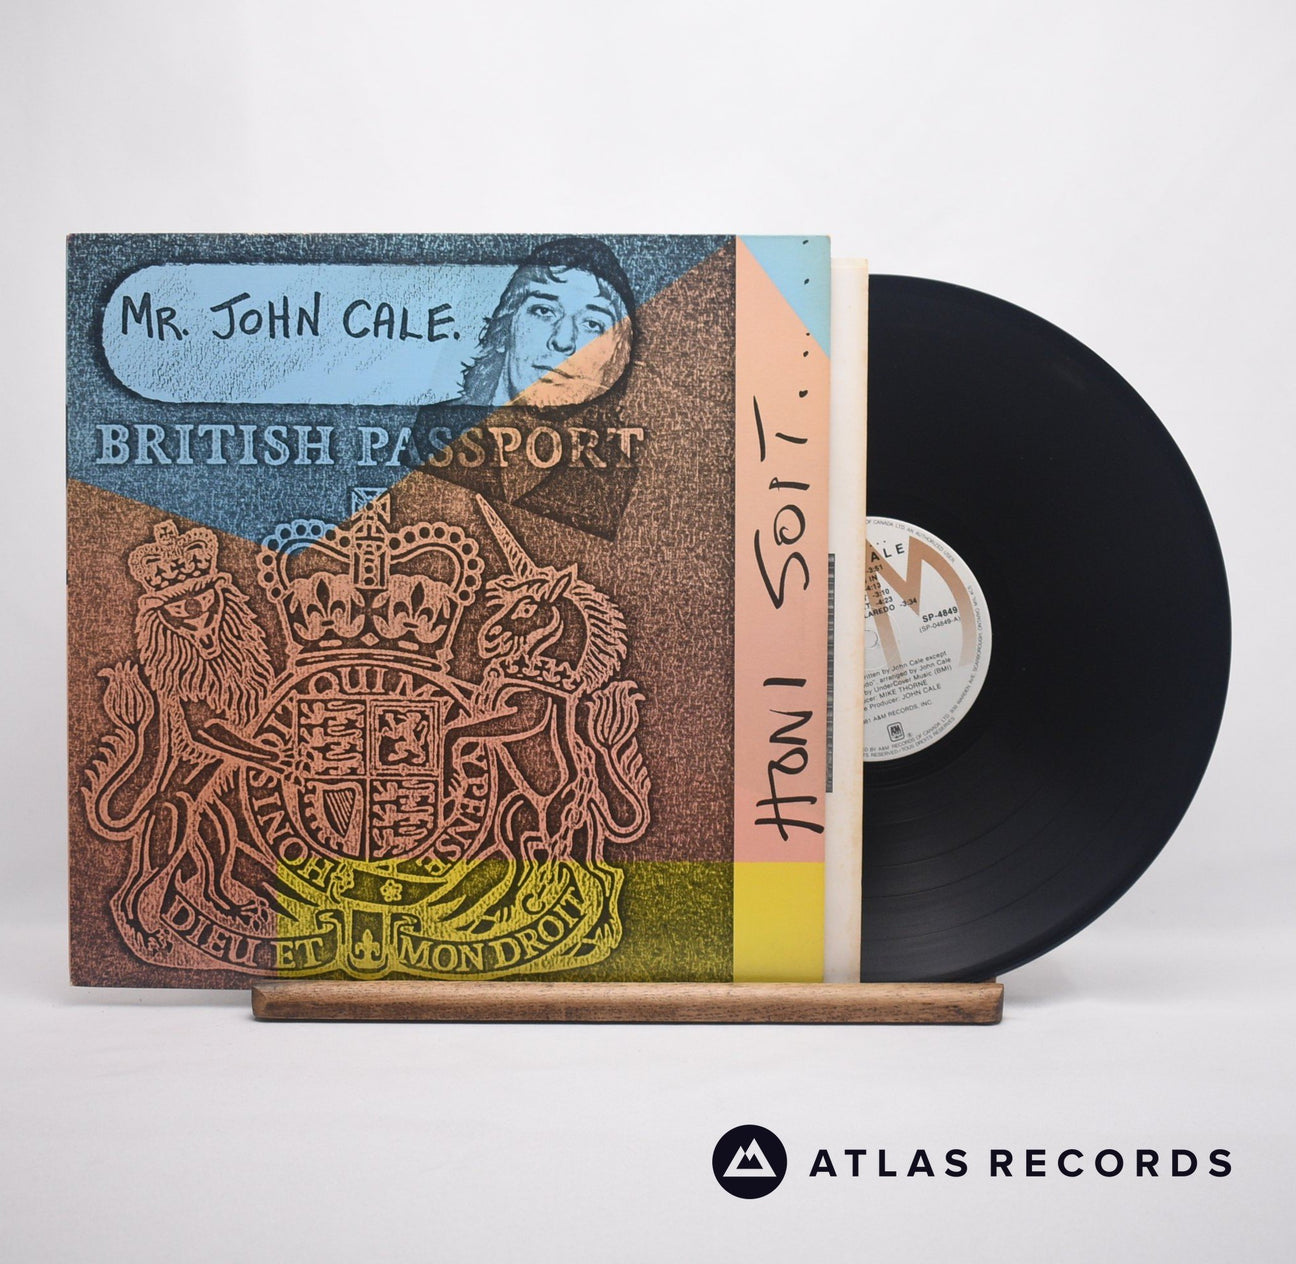 John Cale Honi Soit LP Vinyl Record - Front Cover & Record